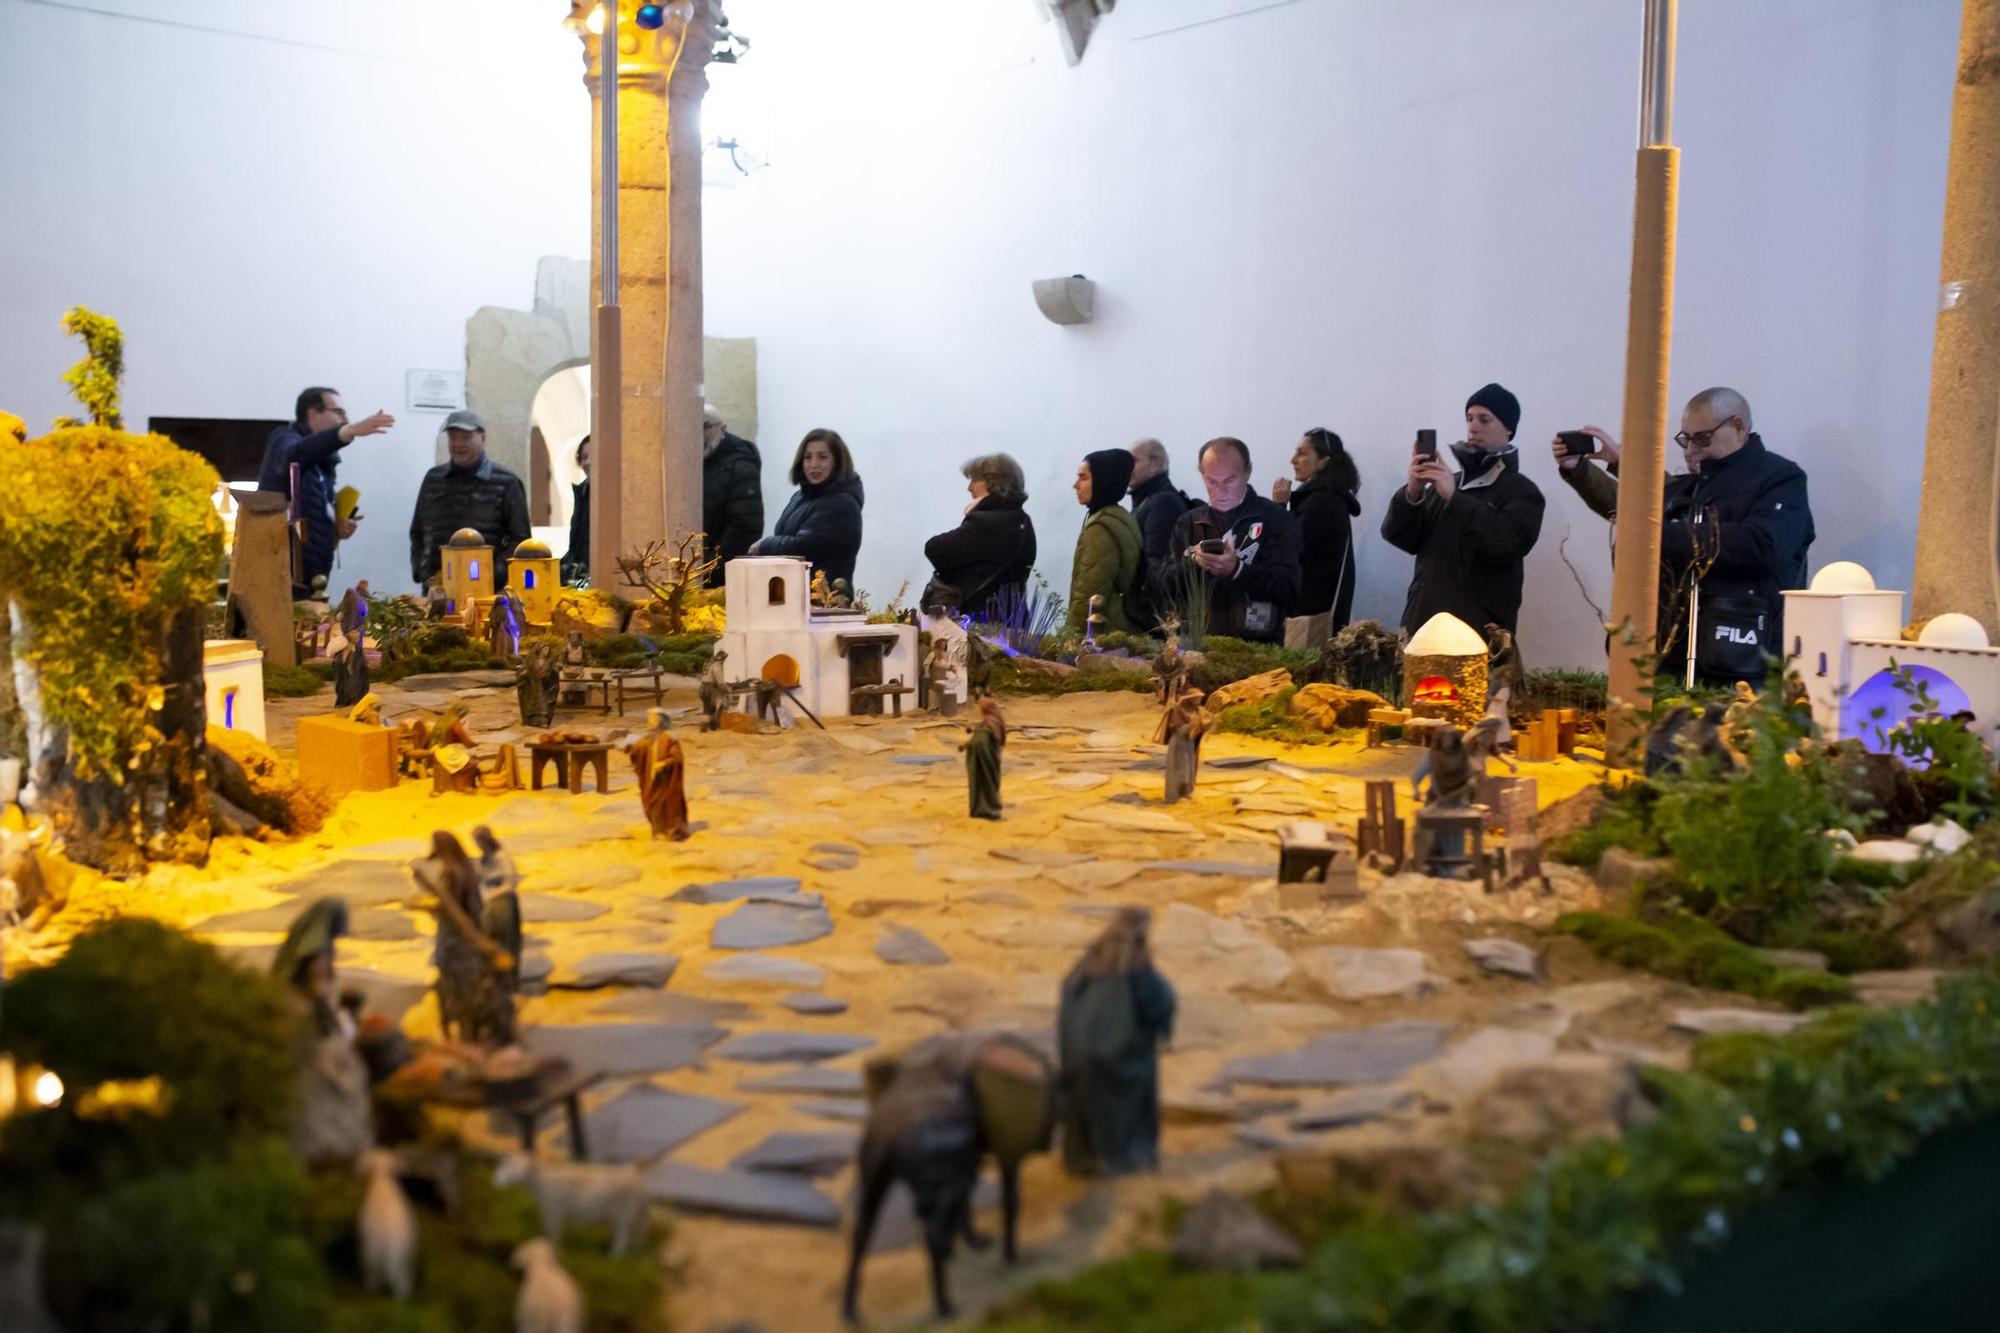 Galería | Más de 300 figuras, incluida una Carantoña, componen el belén de la Diputación de Cáceres